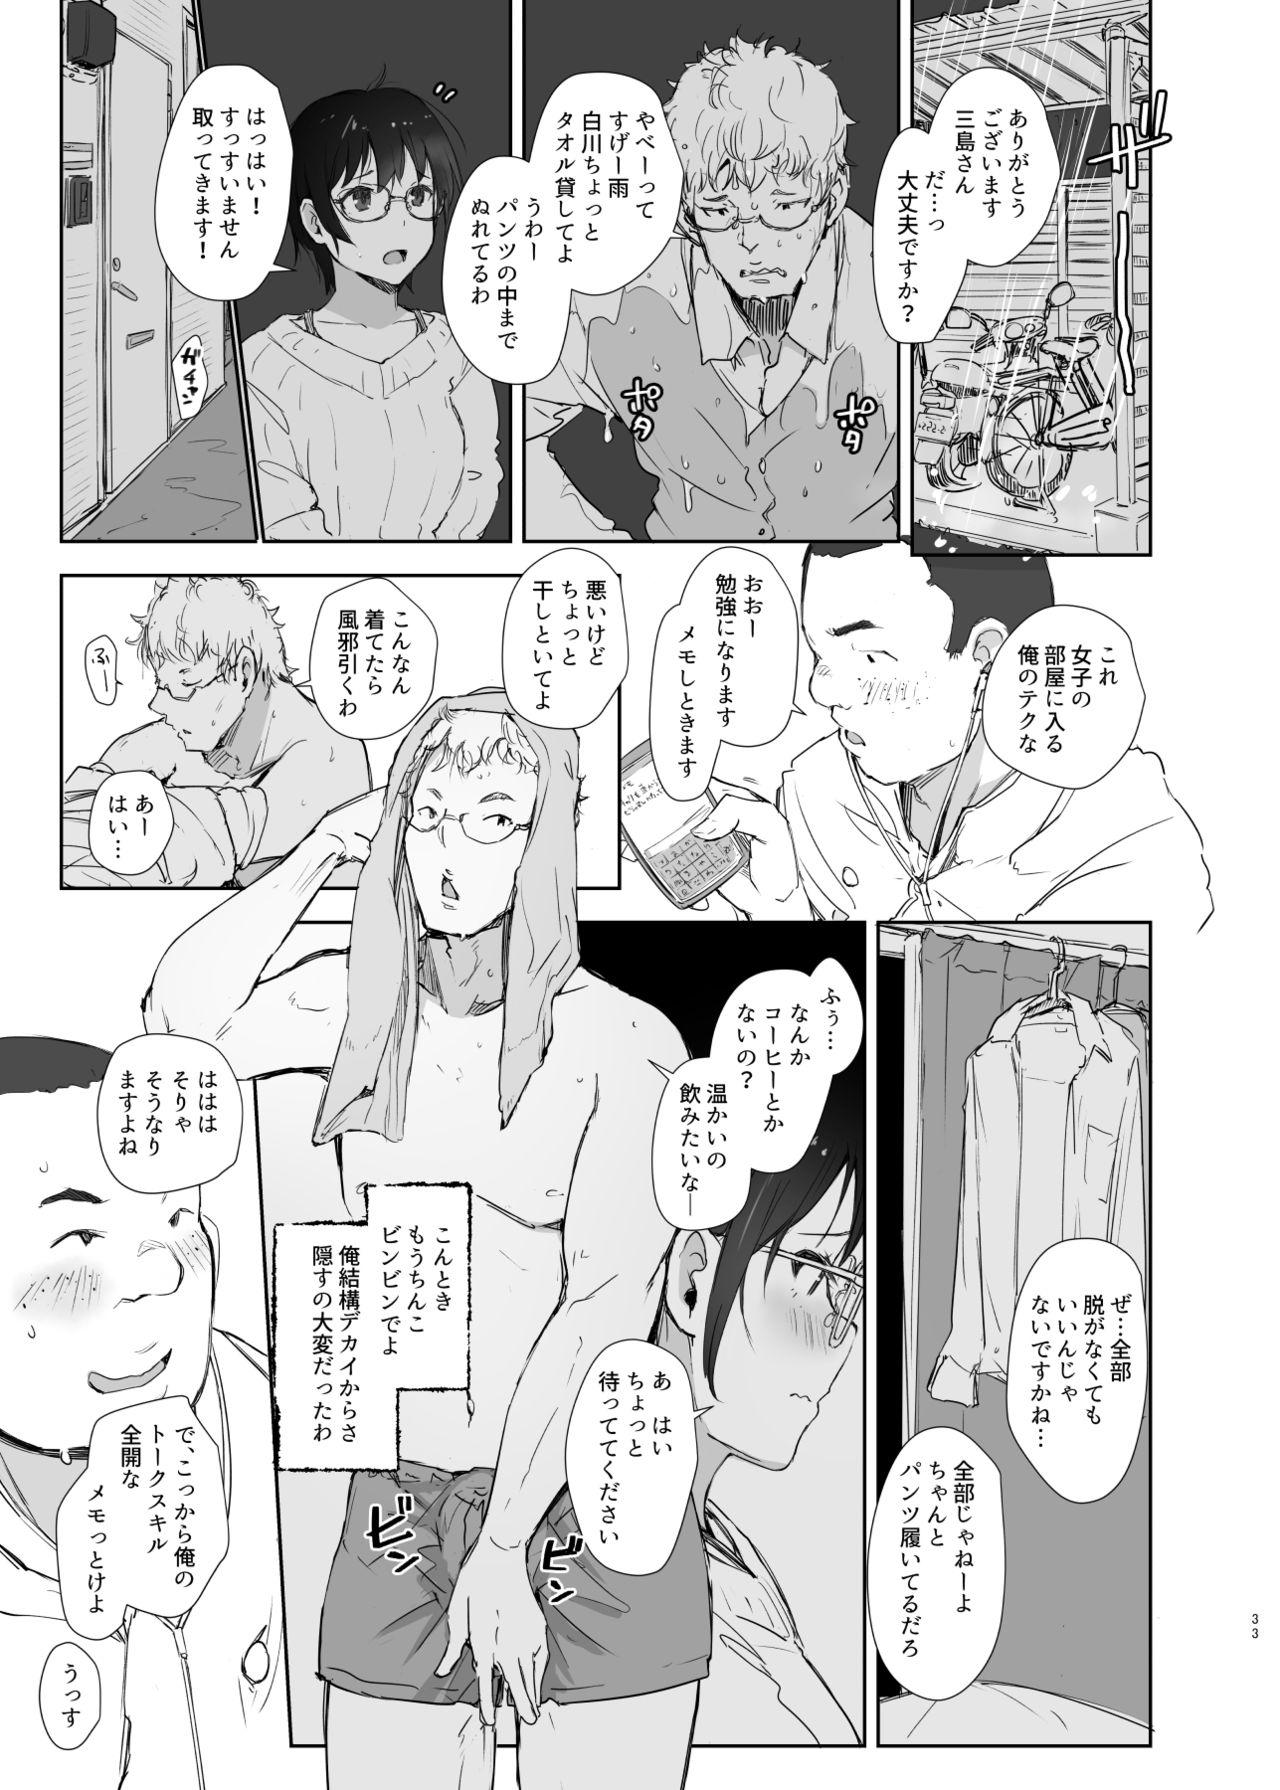 4some Shortcut de Megane no Niau Kawaii Beit no Kouhai no Heya ni Agarikonde Muriyari Hamedori shitatta - Original Affair - Page 7